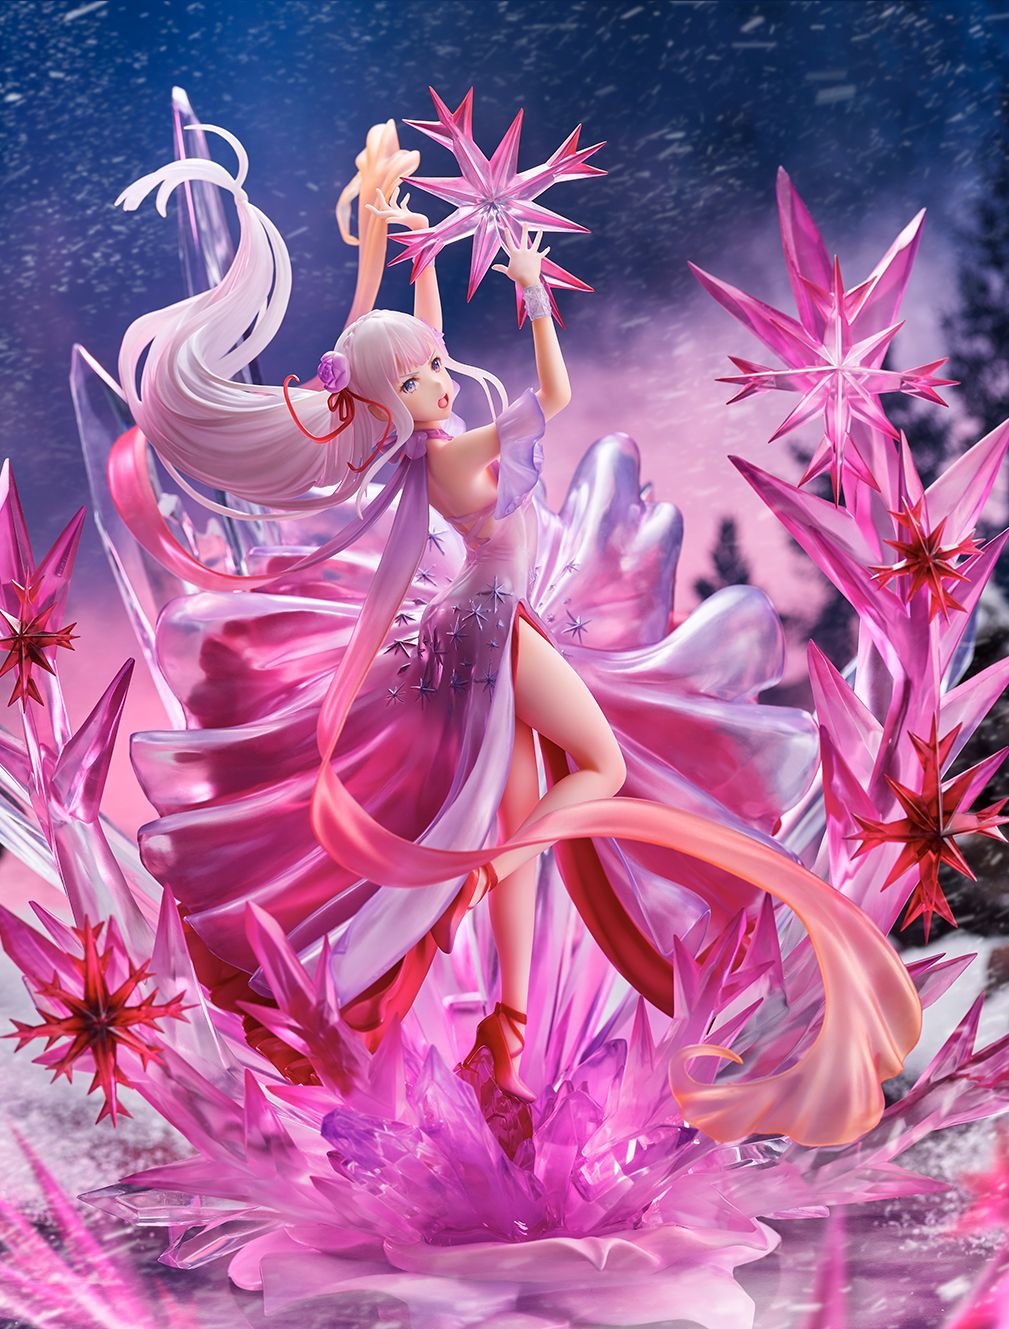 【限定販売】Re:ゼロから始める異世界生活『氷結のエミリア -Crystal Dress Ver-』 1/7 完成品フィギュア-005